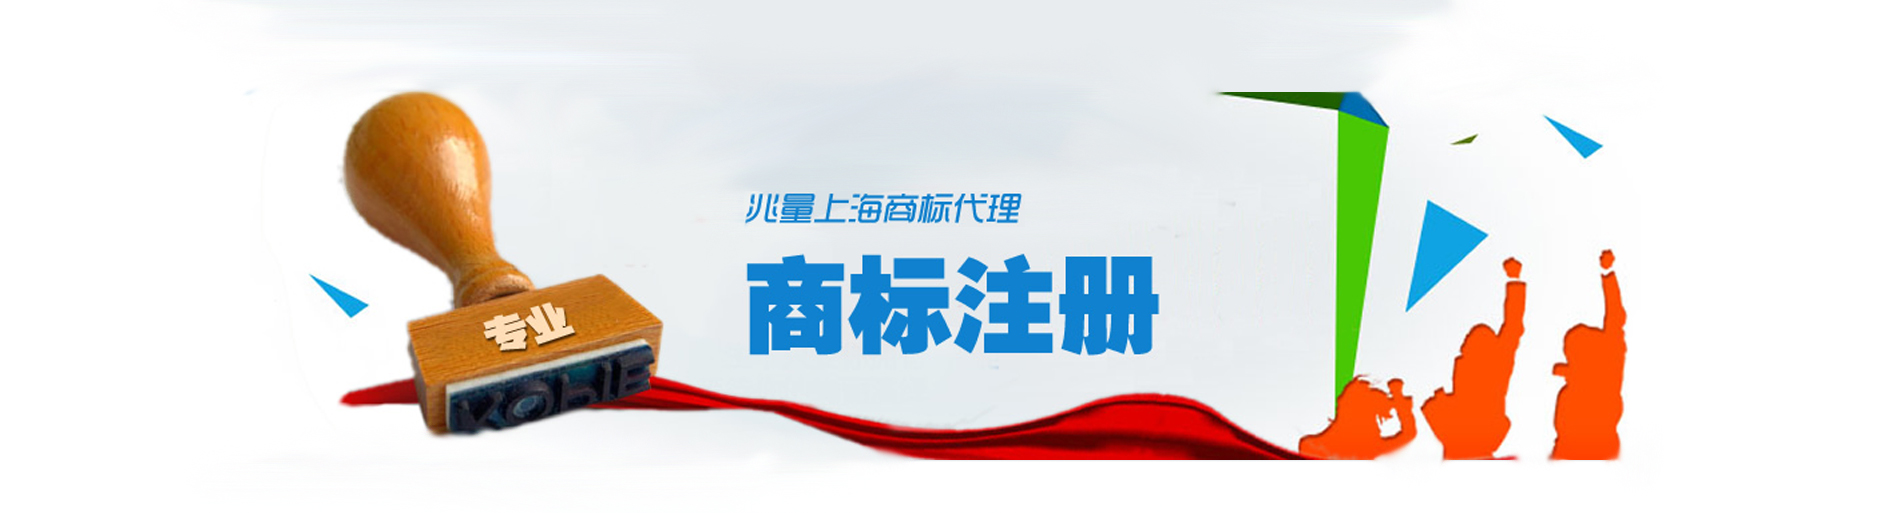 上海商标注册,上海商标申请,商标驳回复审